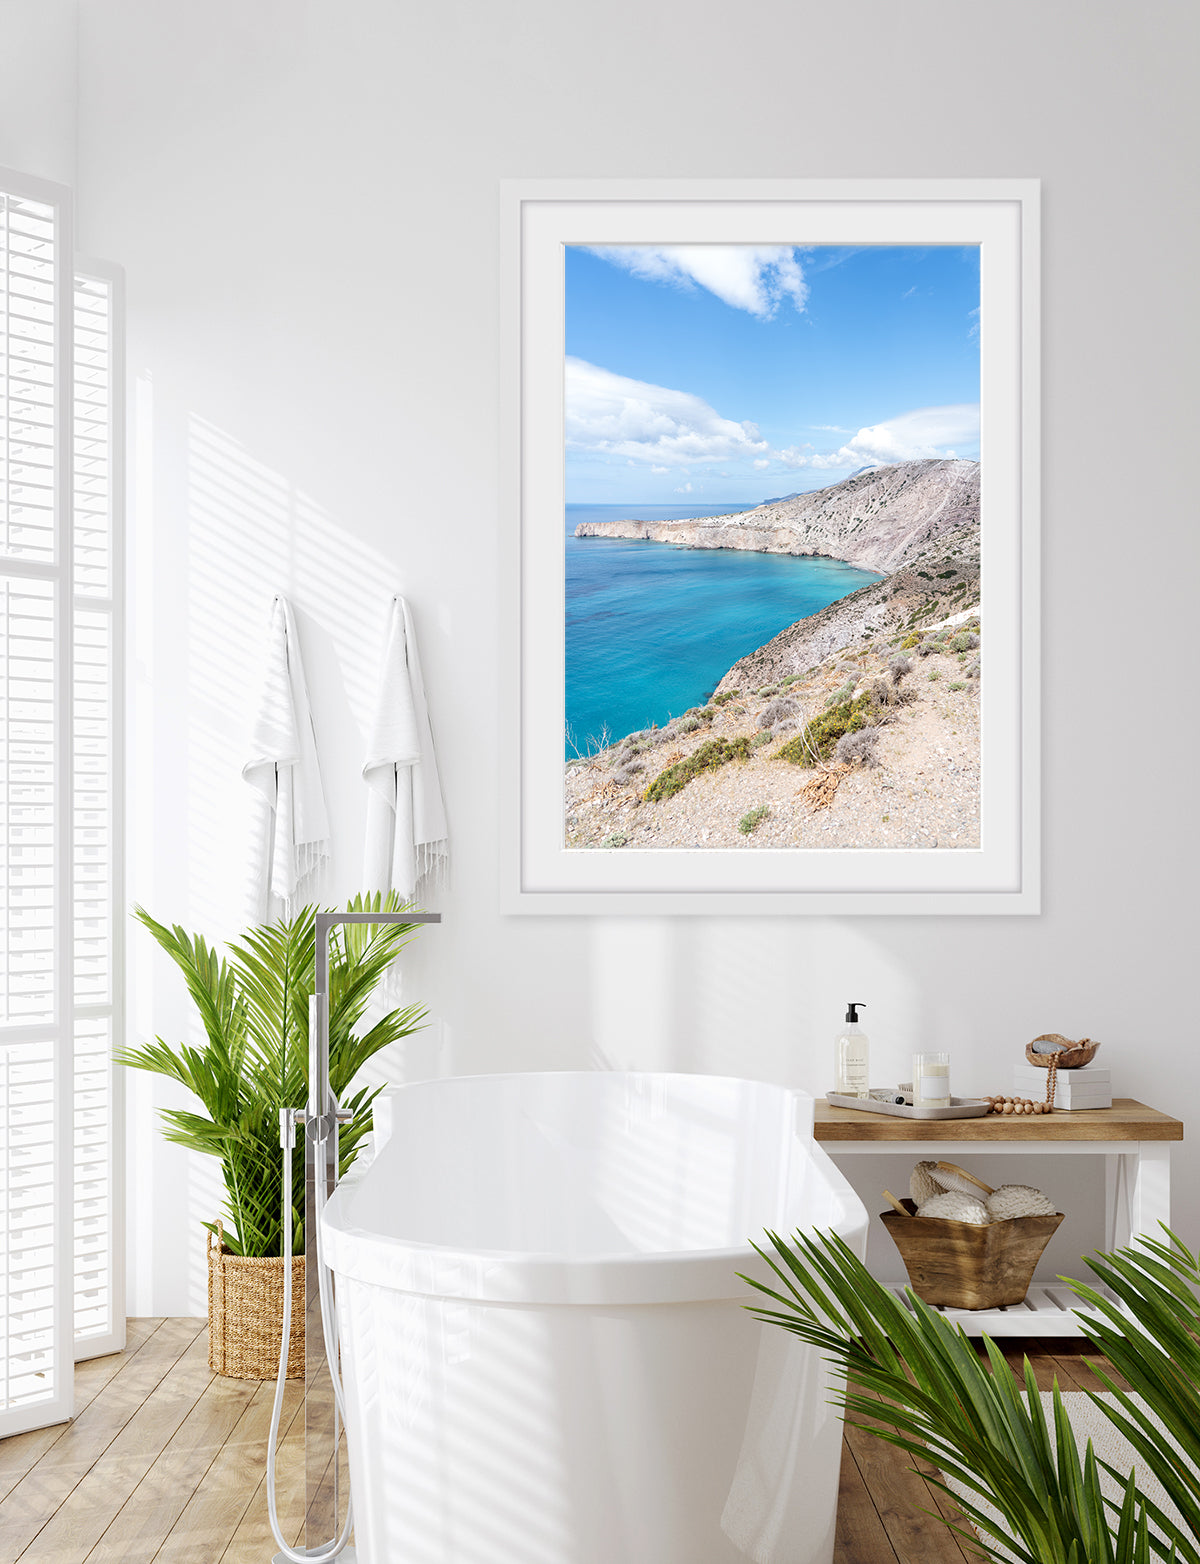 coastal bathroom decor, blue and white aegean sea landscape